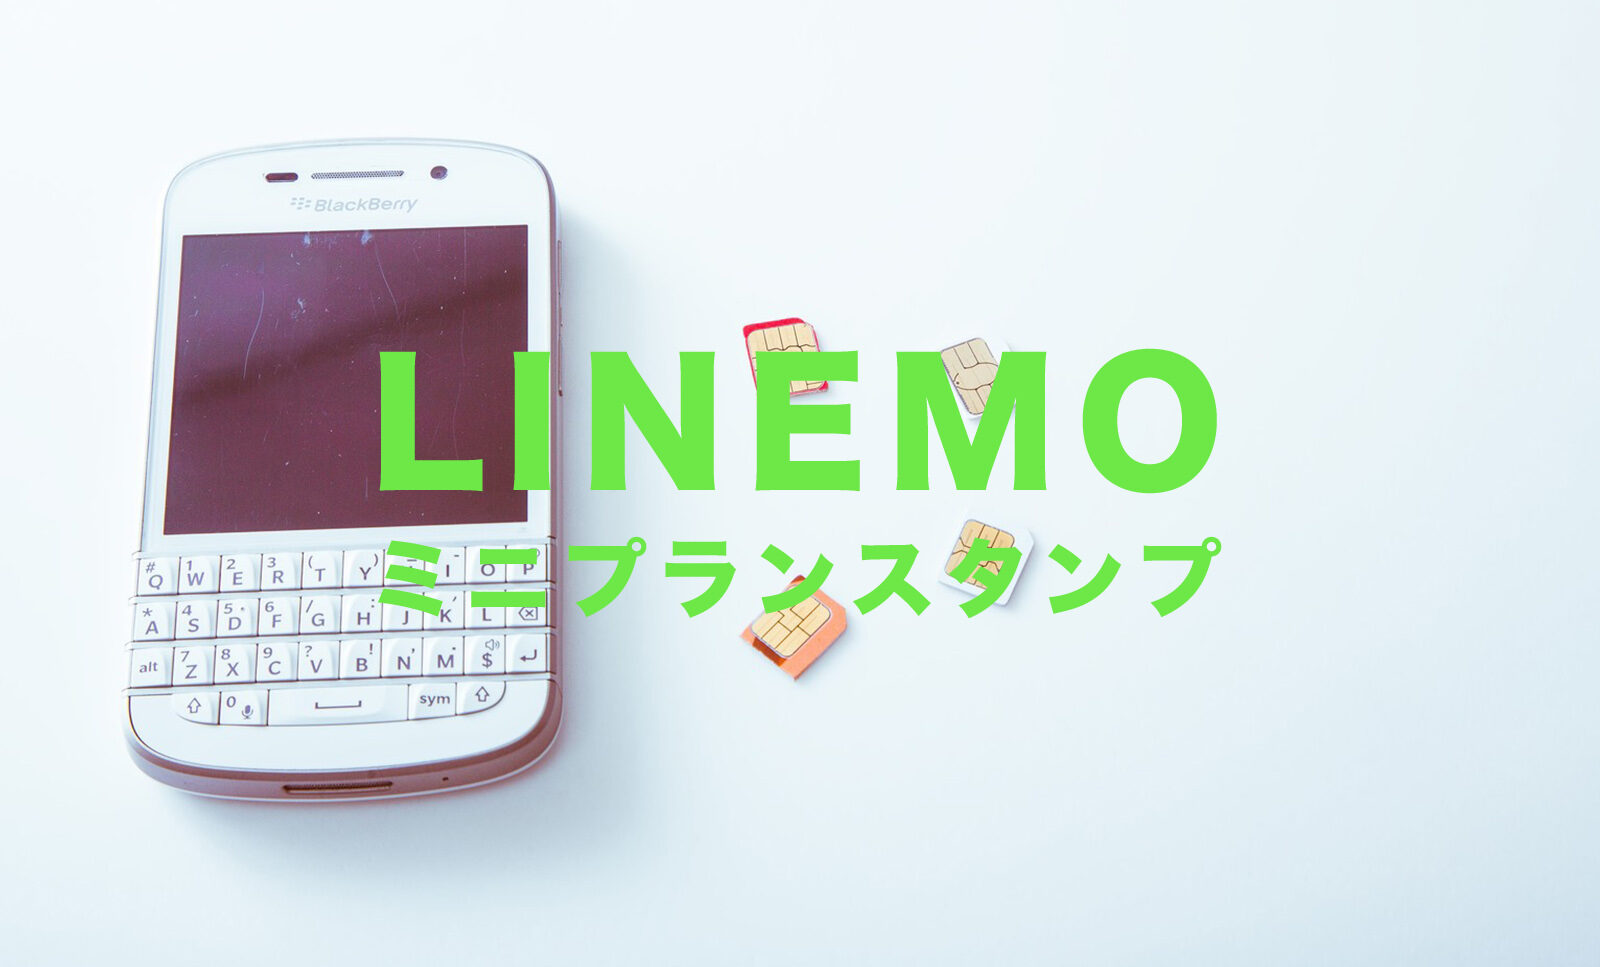 LINEMO(ラインモ)のミニプランはLINEスタンプキャンペーンの対象？のサムネイル画像